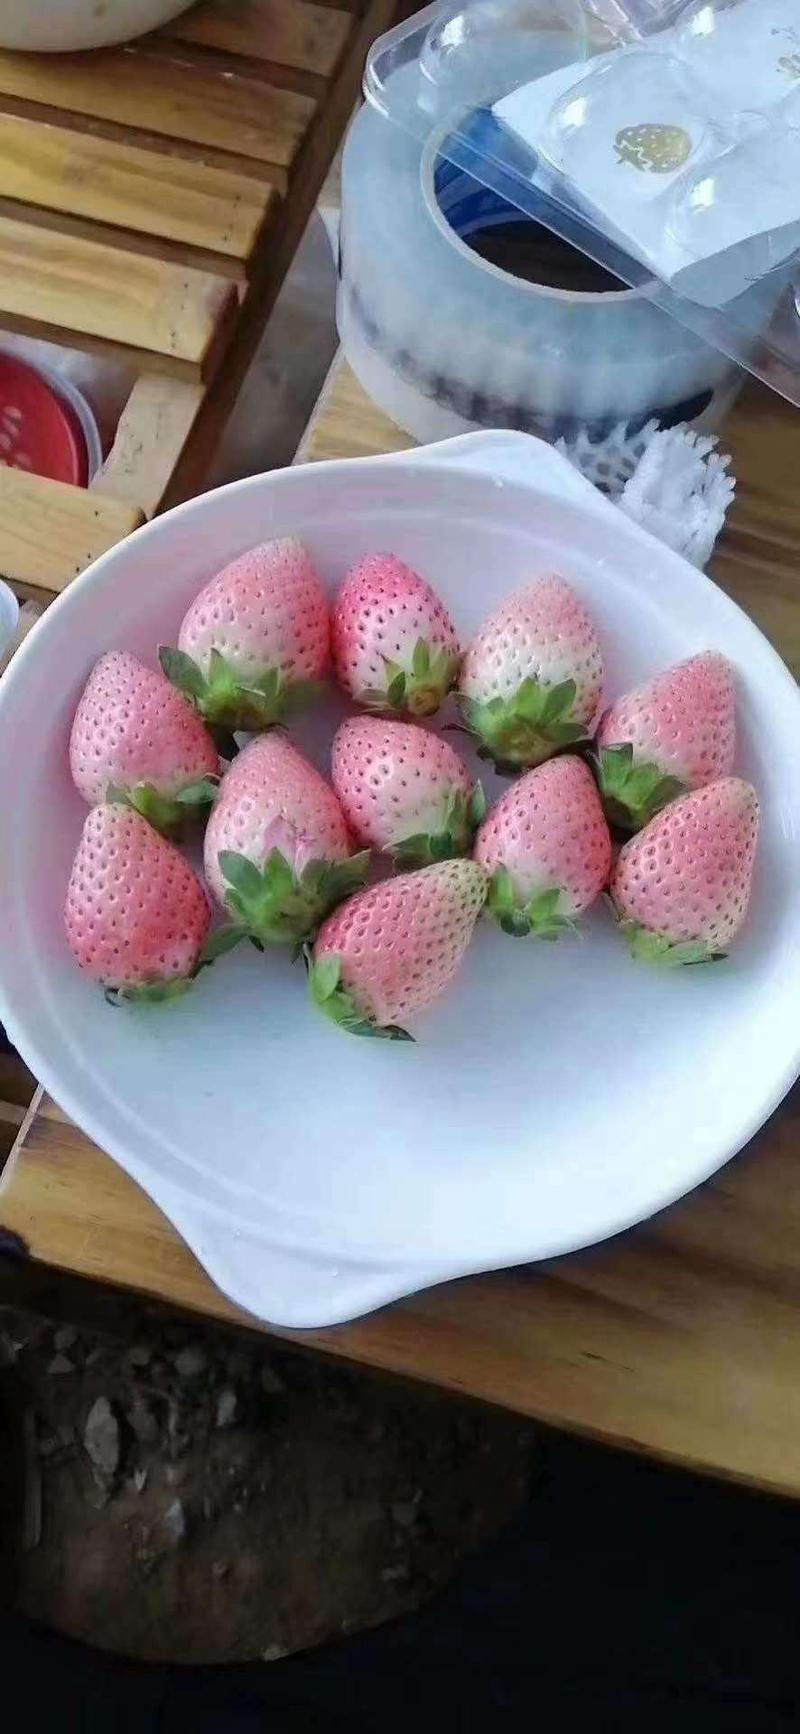 桃熏草莓苗京桃香白雪公主草莓苗免费提供技术支持可实地考察